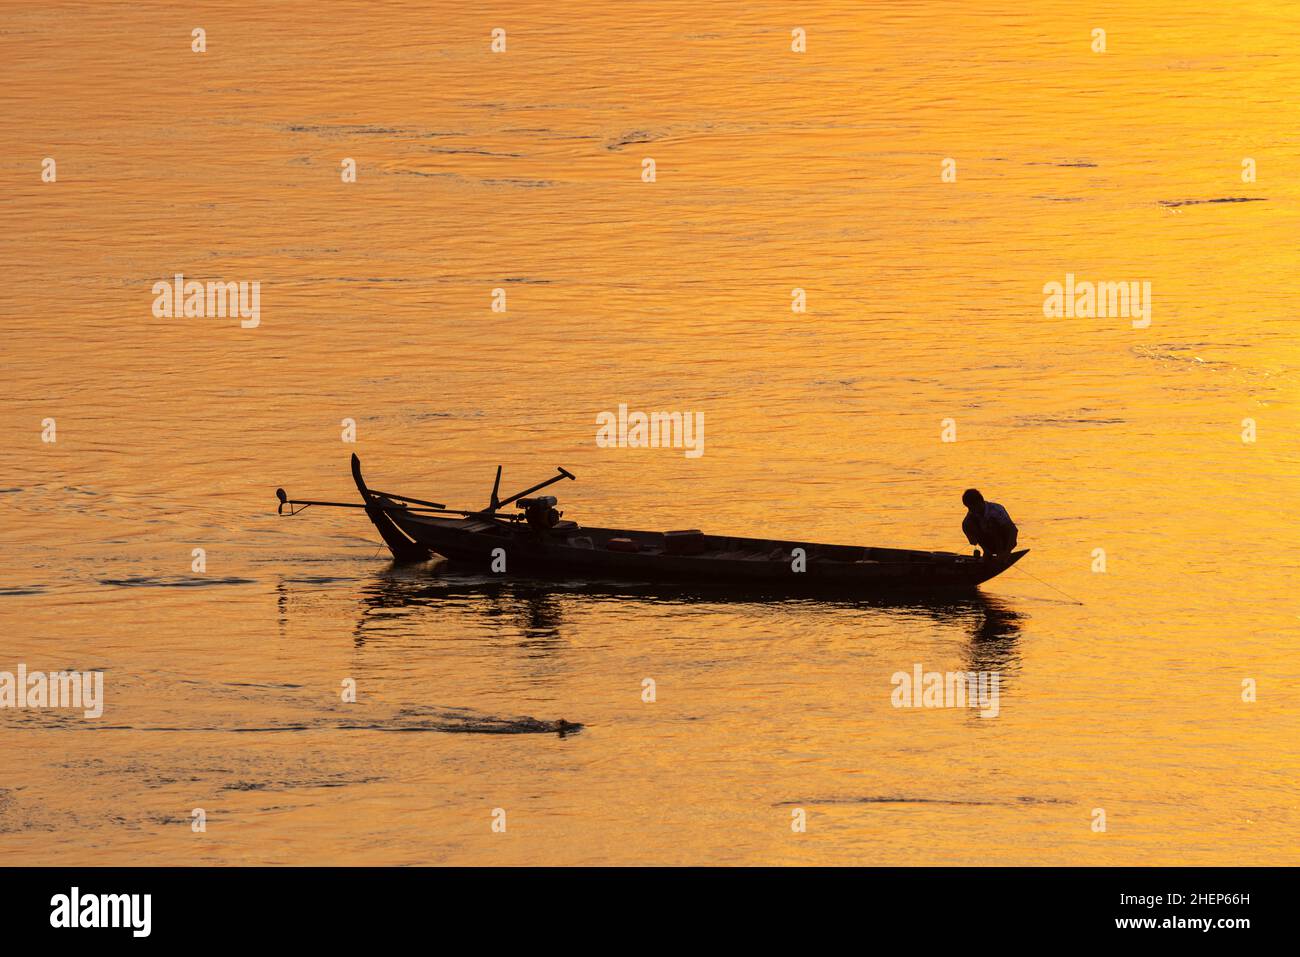 Pescatore sulla barca tradizionale sul fiume Mekong in Cambogia durante il tramonto Foto Stock